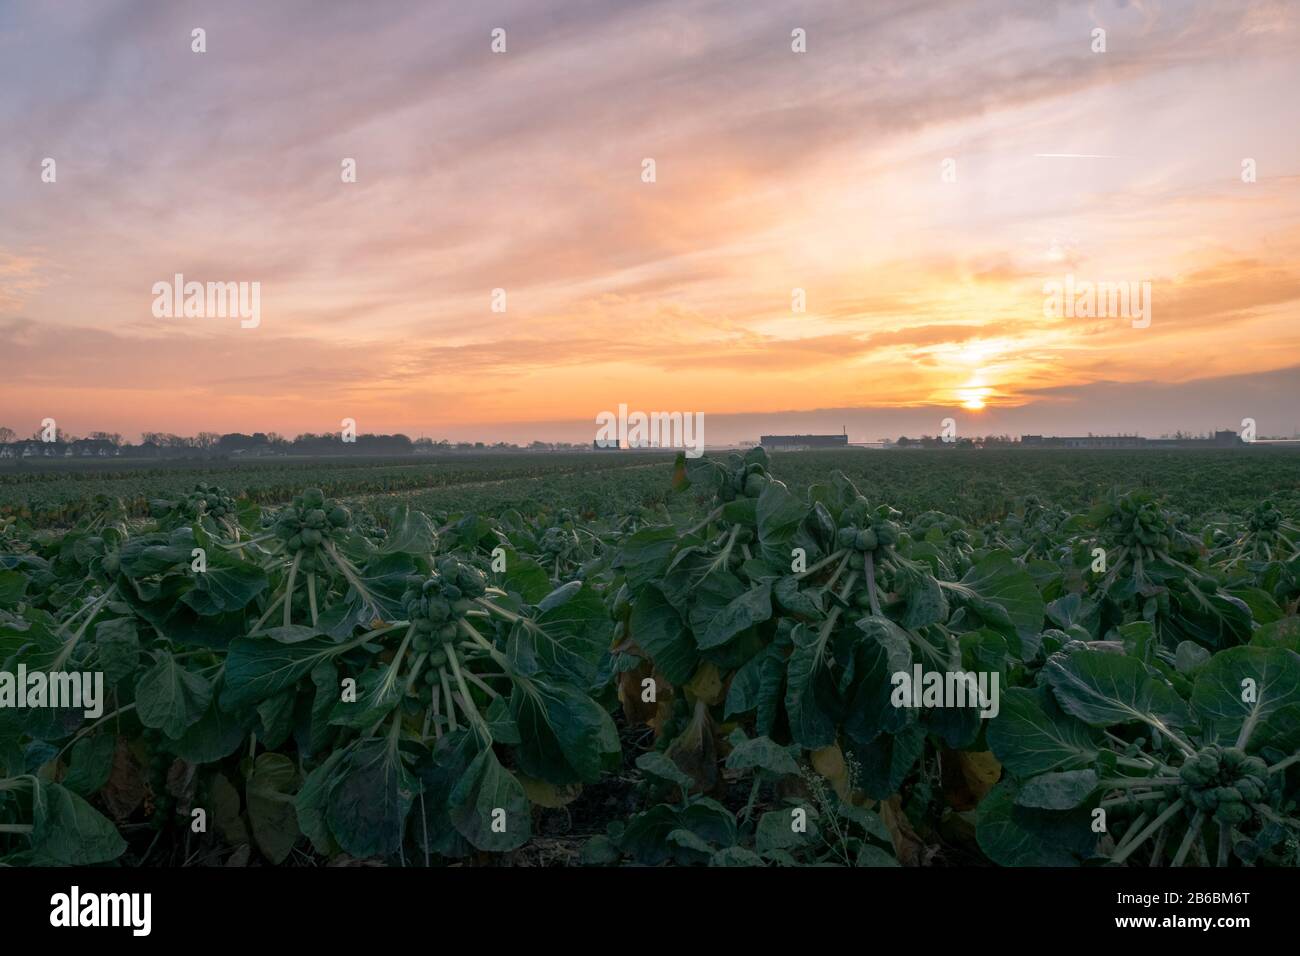 Le champ des Sprouts de Bruxelles est prêt à être récolté. Magnifique coucher de soleil sur la campagne néerlandaise. Banque D'Images